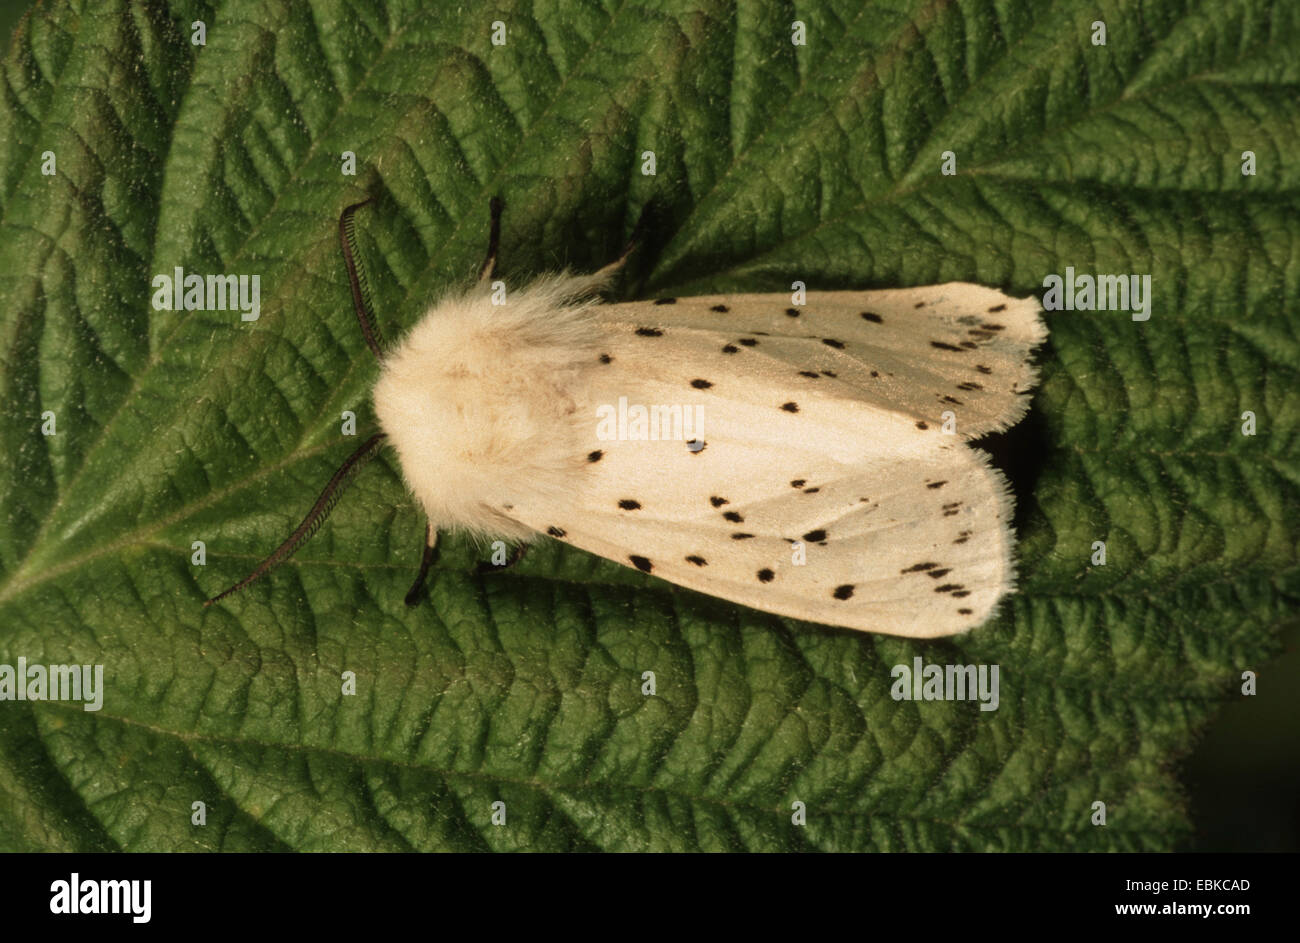 Hyponomeute du pommier blanc (Spilosoma lubricipeda Spilosoma menthastri,), assis sur une feuille, Allemagne Banque D'Images